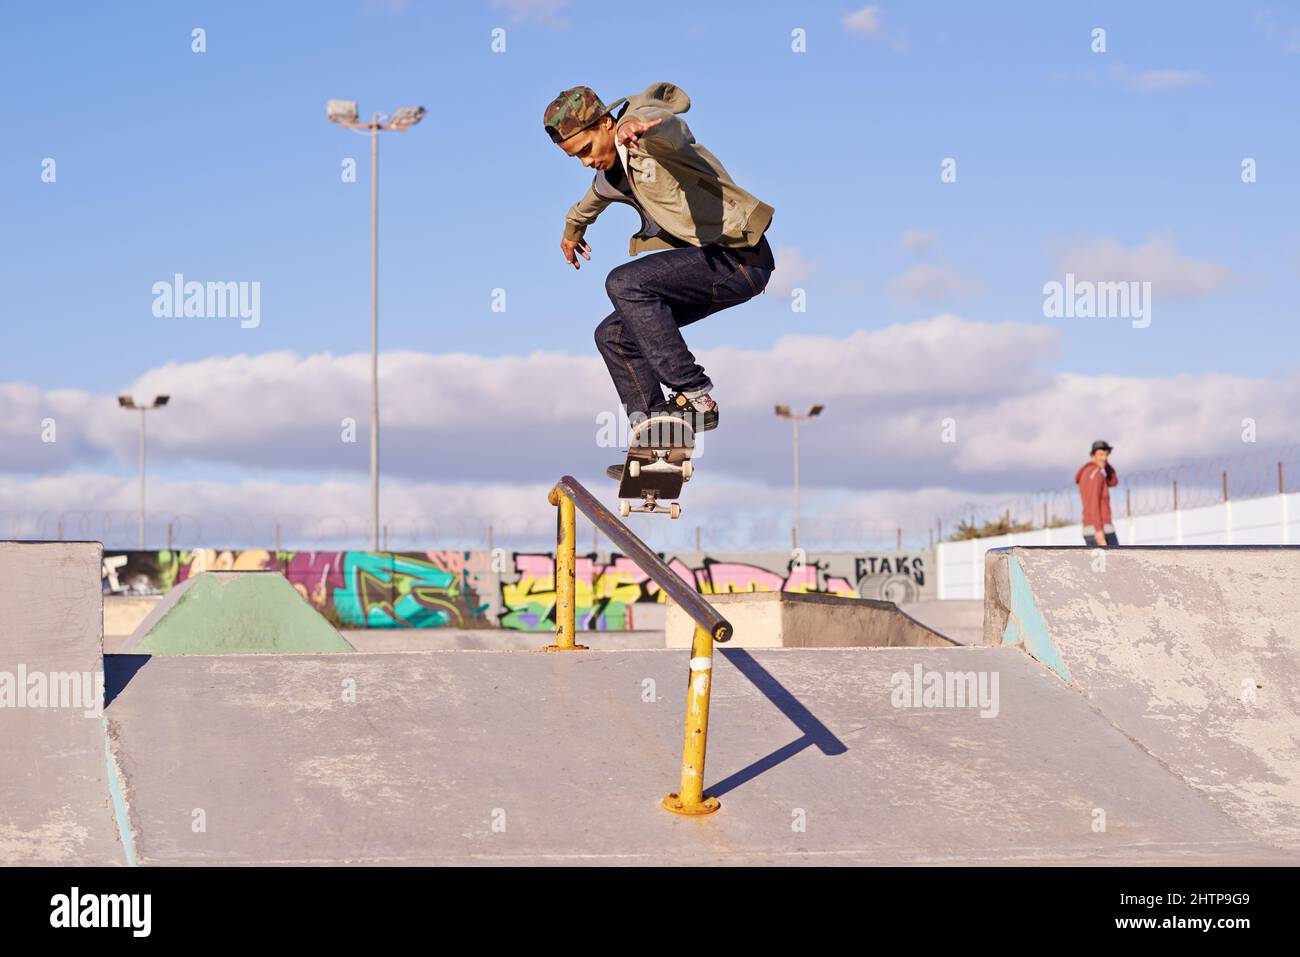 Meuler comme un pro. Photo d'un skateboarder effectuant un tour sur un rail. Banque D'Images